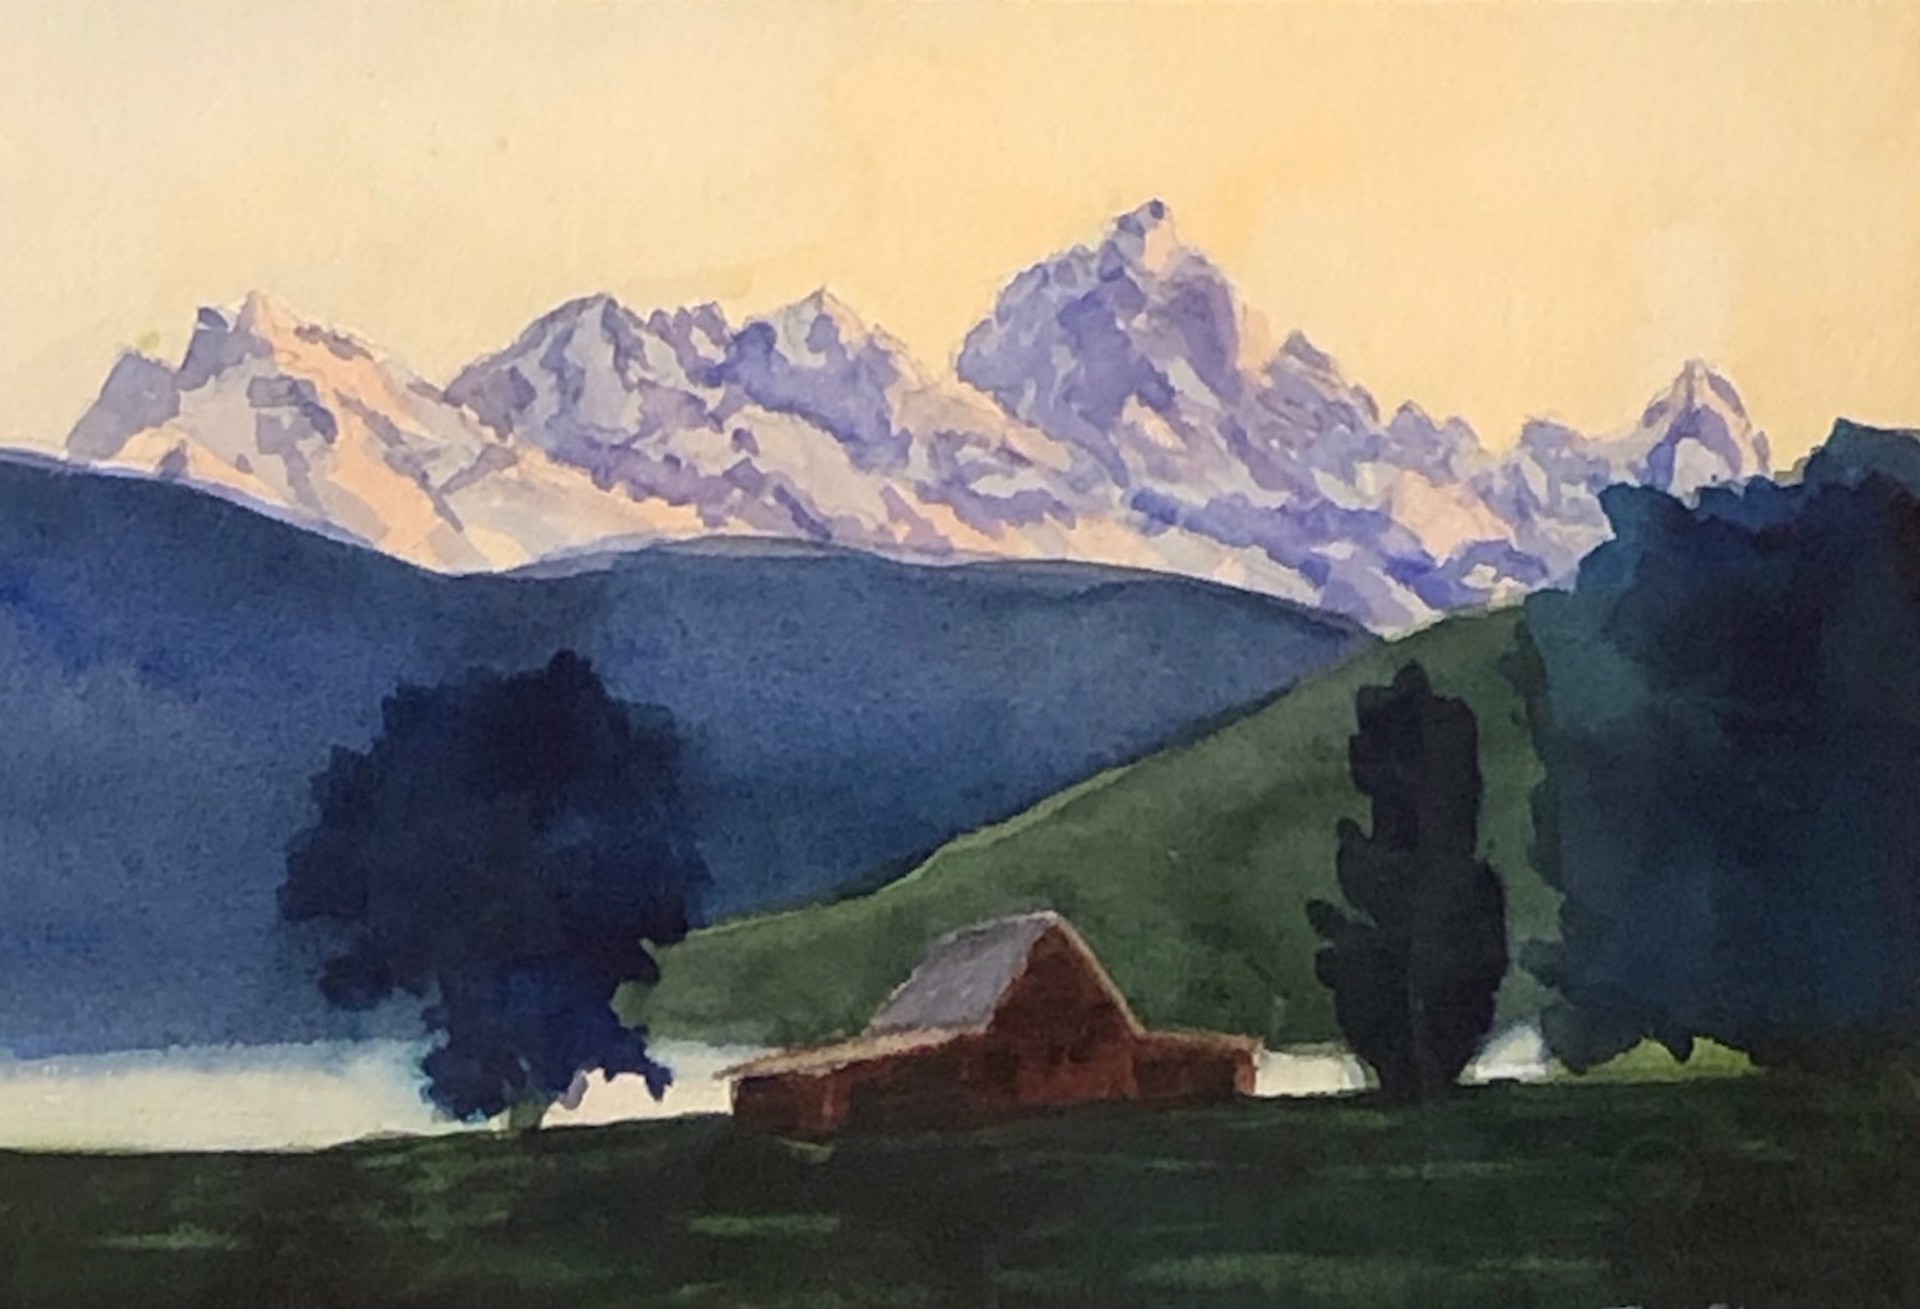 Teton Morning by Tim Sloan